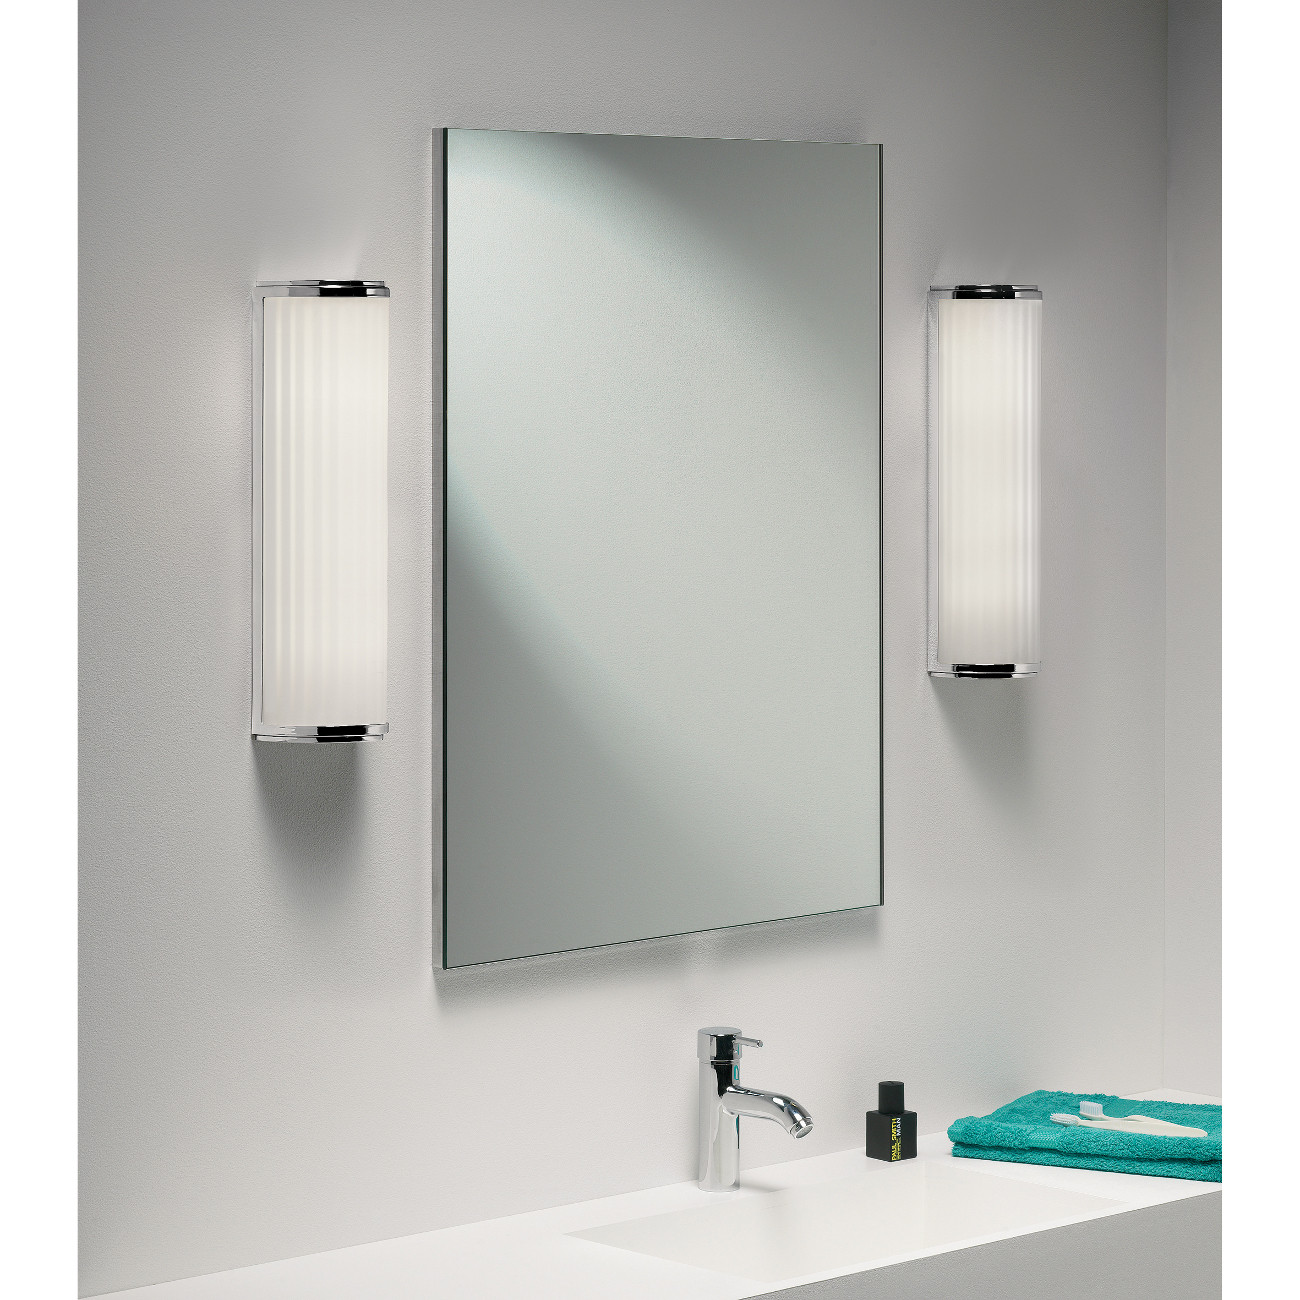 Spiegelleuchte Bad
 Bad Spiegelleuchte in LED mit Glas matt MONZA 400 LED